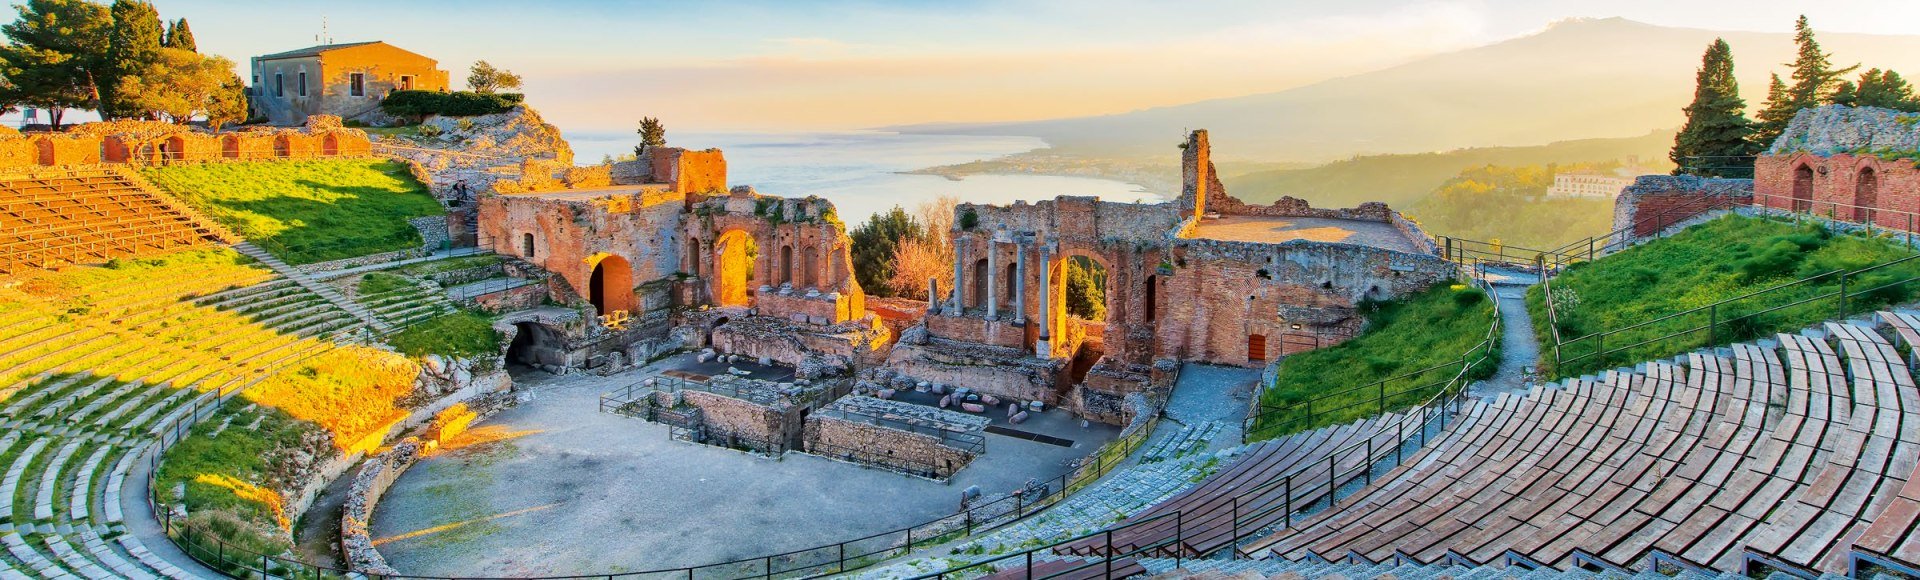 Harmonie von Antike und Landschaft: das Theater von Taormina, © michelangeloop - stock.adobe.com